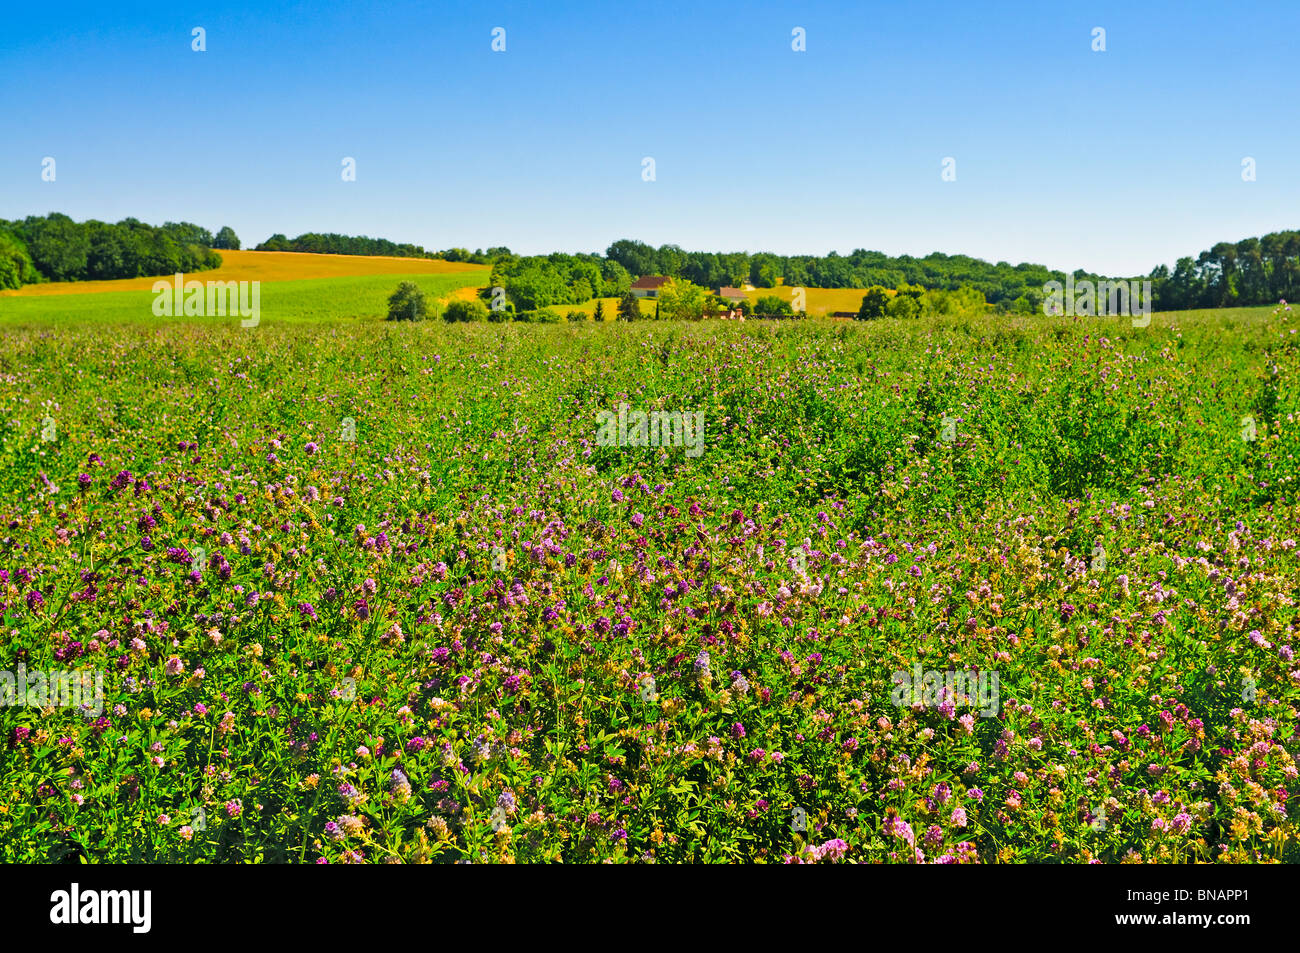 Lucerne / Alfalfa (Medicage sative) flowering plants - Indre-et-Loire, France. Stock Photo